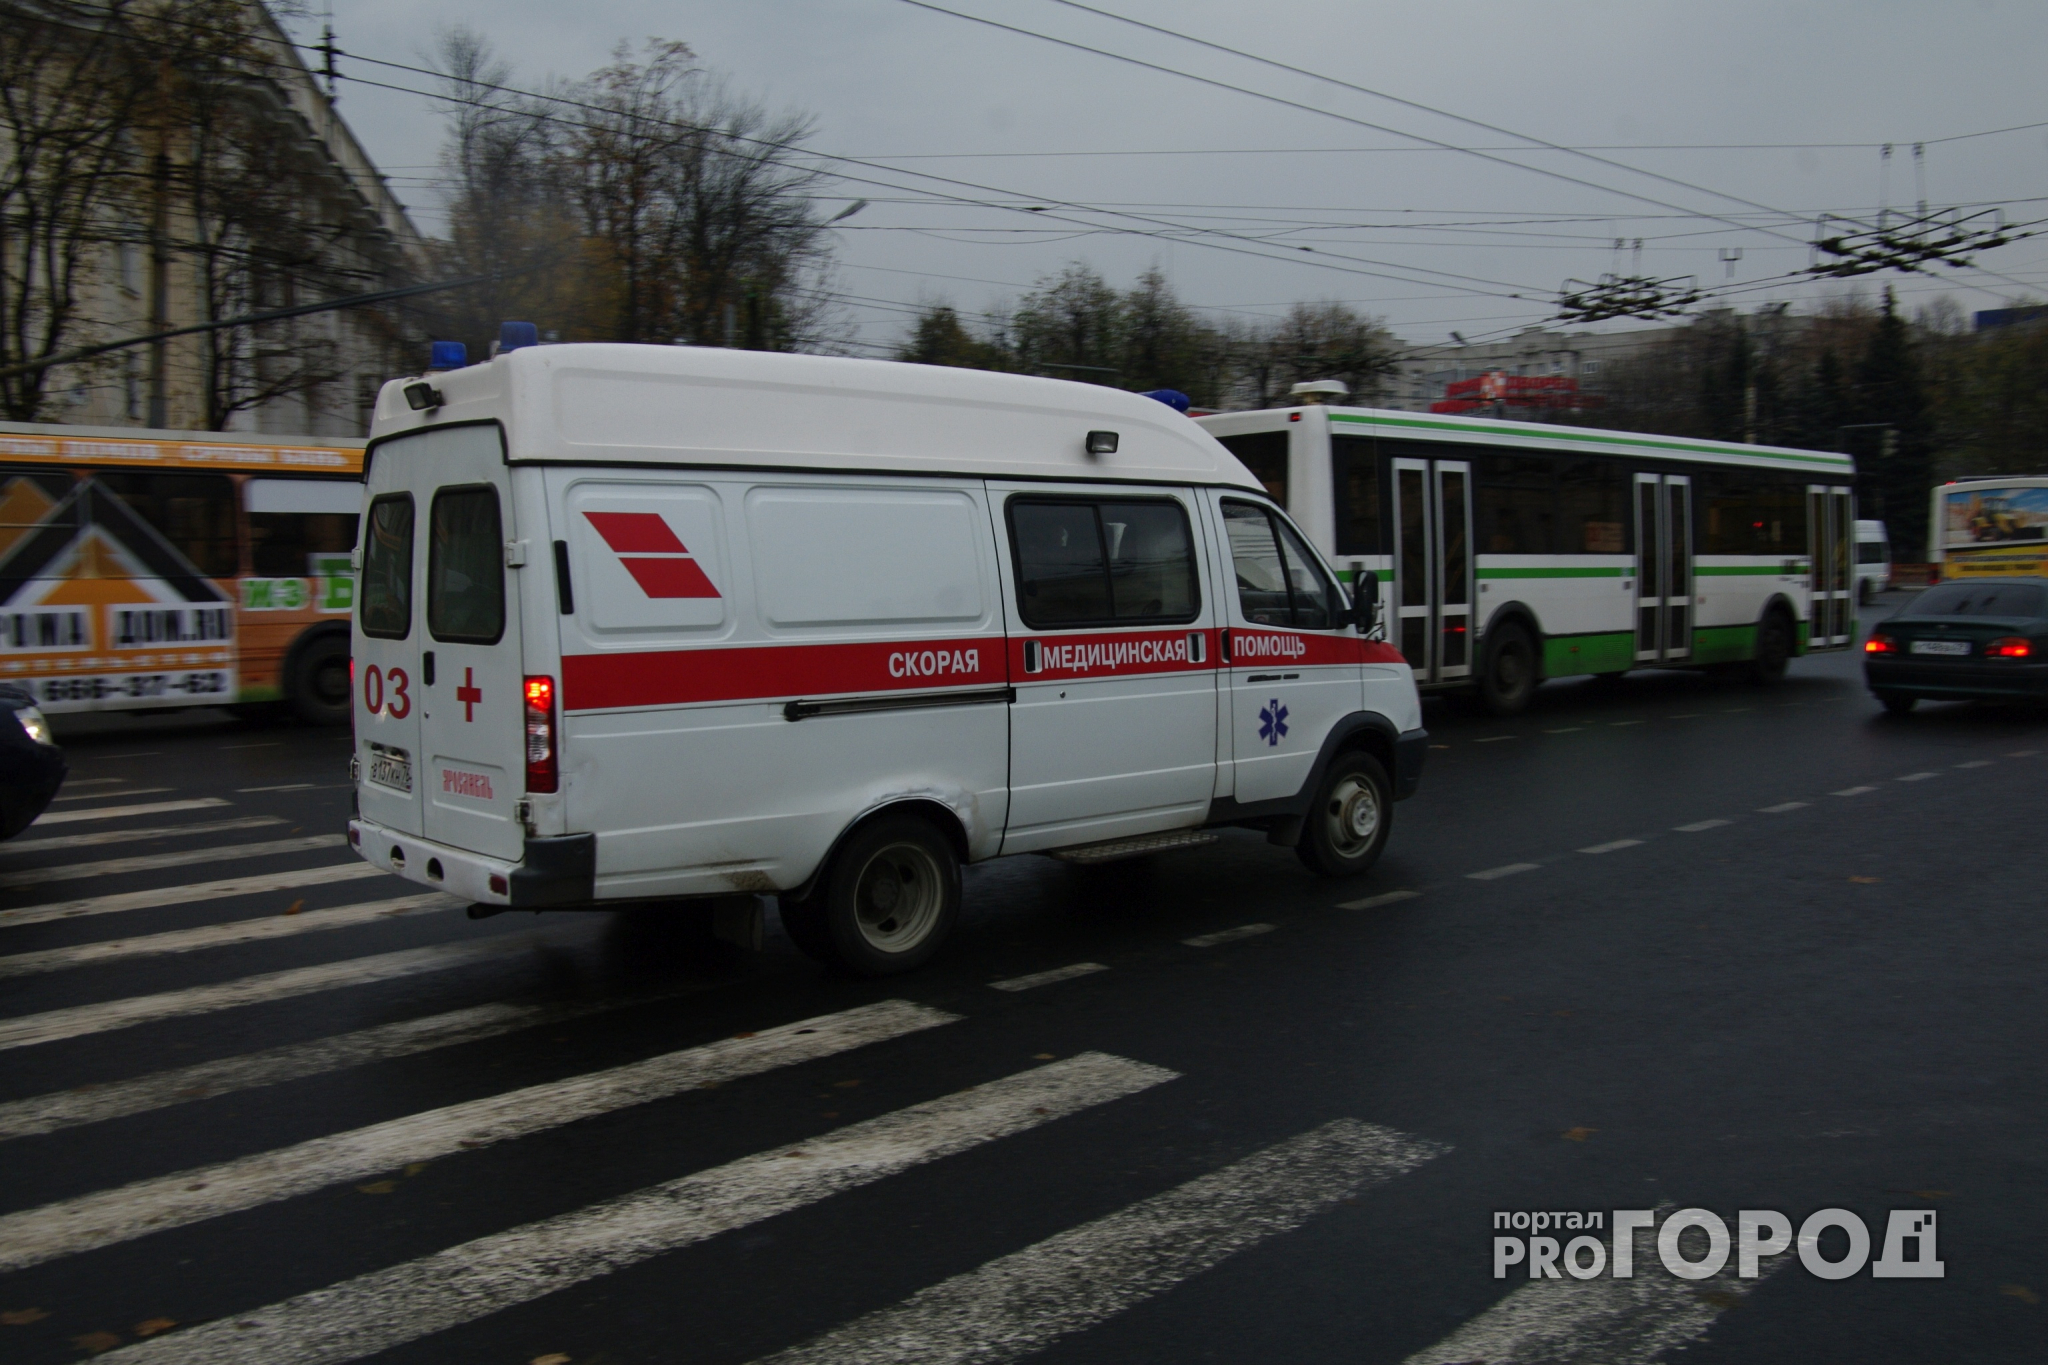 В Пензе на улице Суворова Mazda сбила 51-летнего мужчину